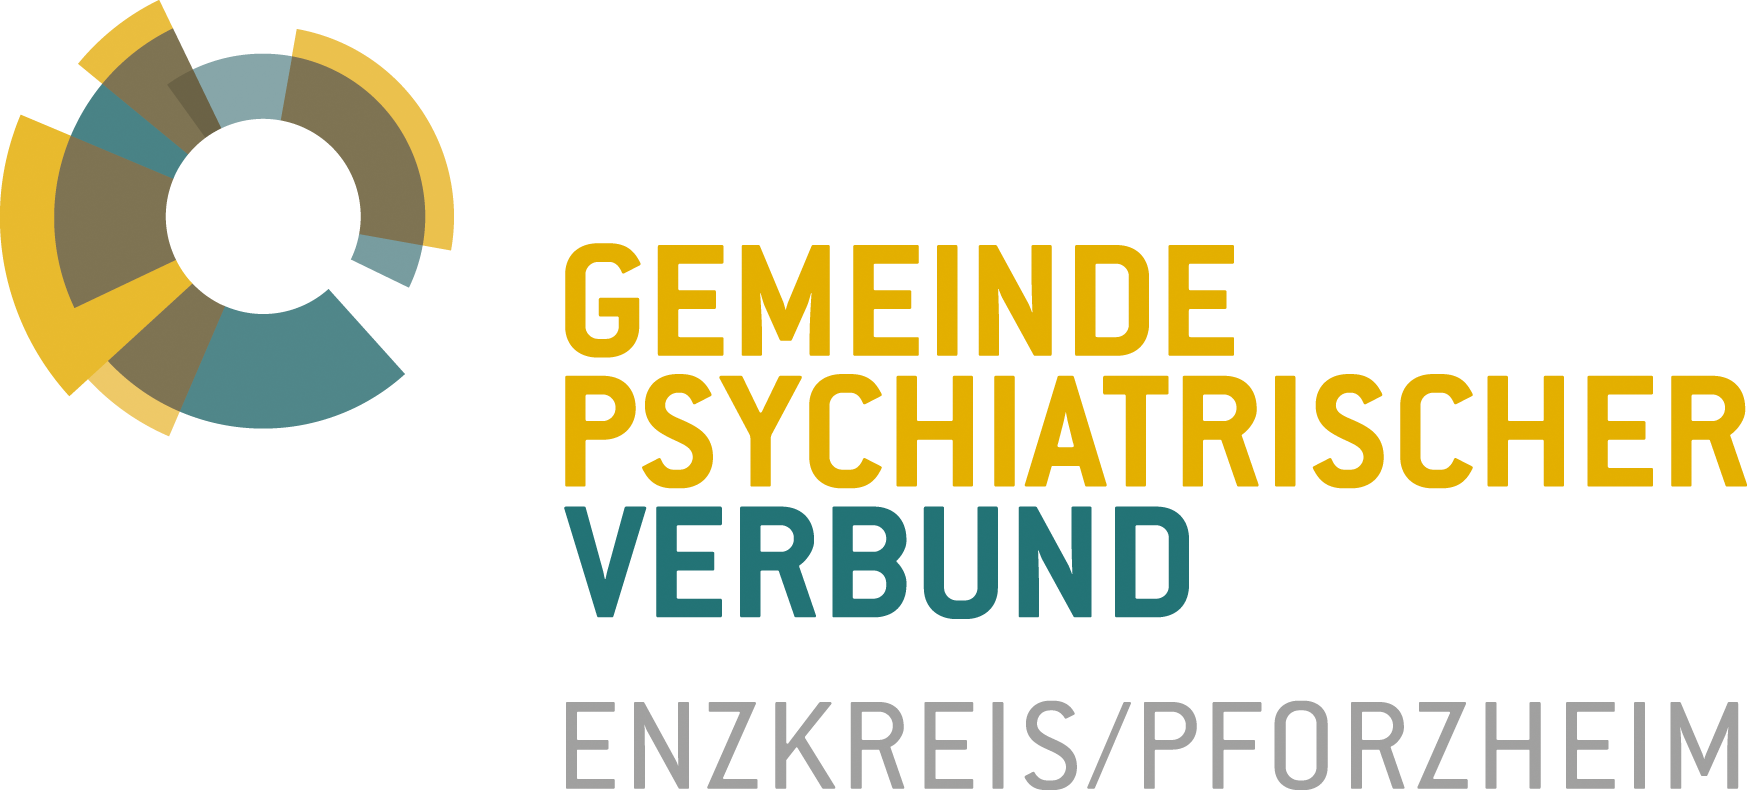 Gemeindepsychiatrischen Verbund (GPV) Enzkreis/Stadt Pforzheim